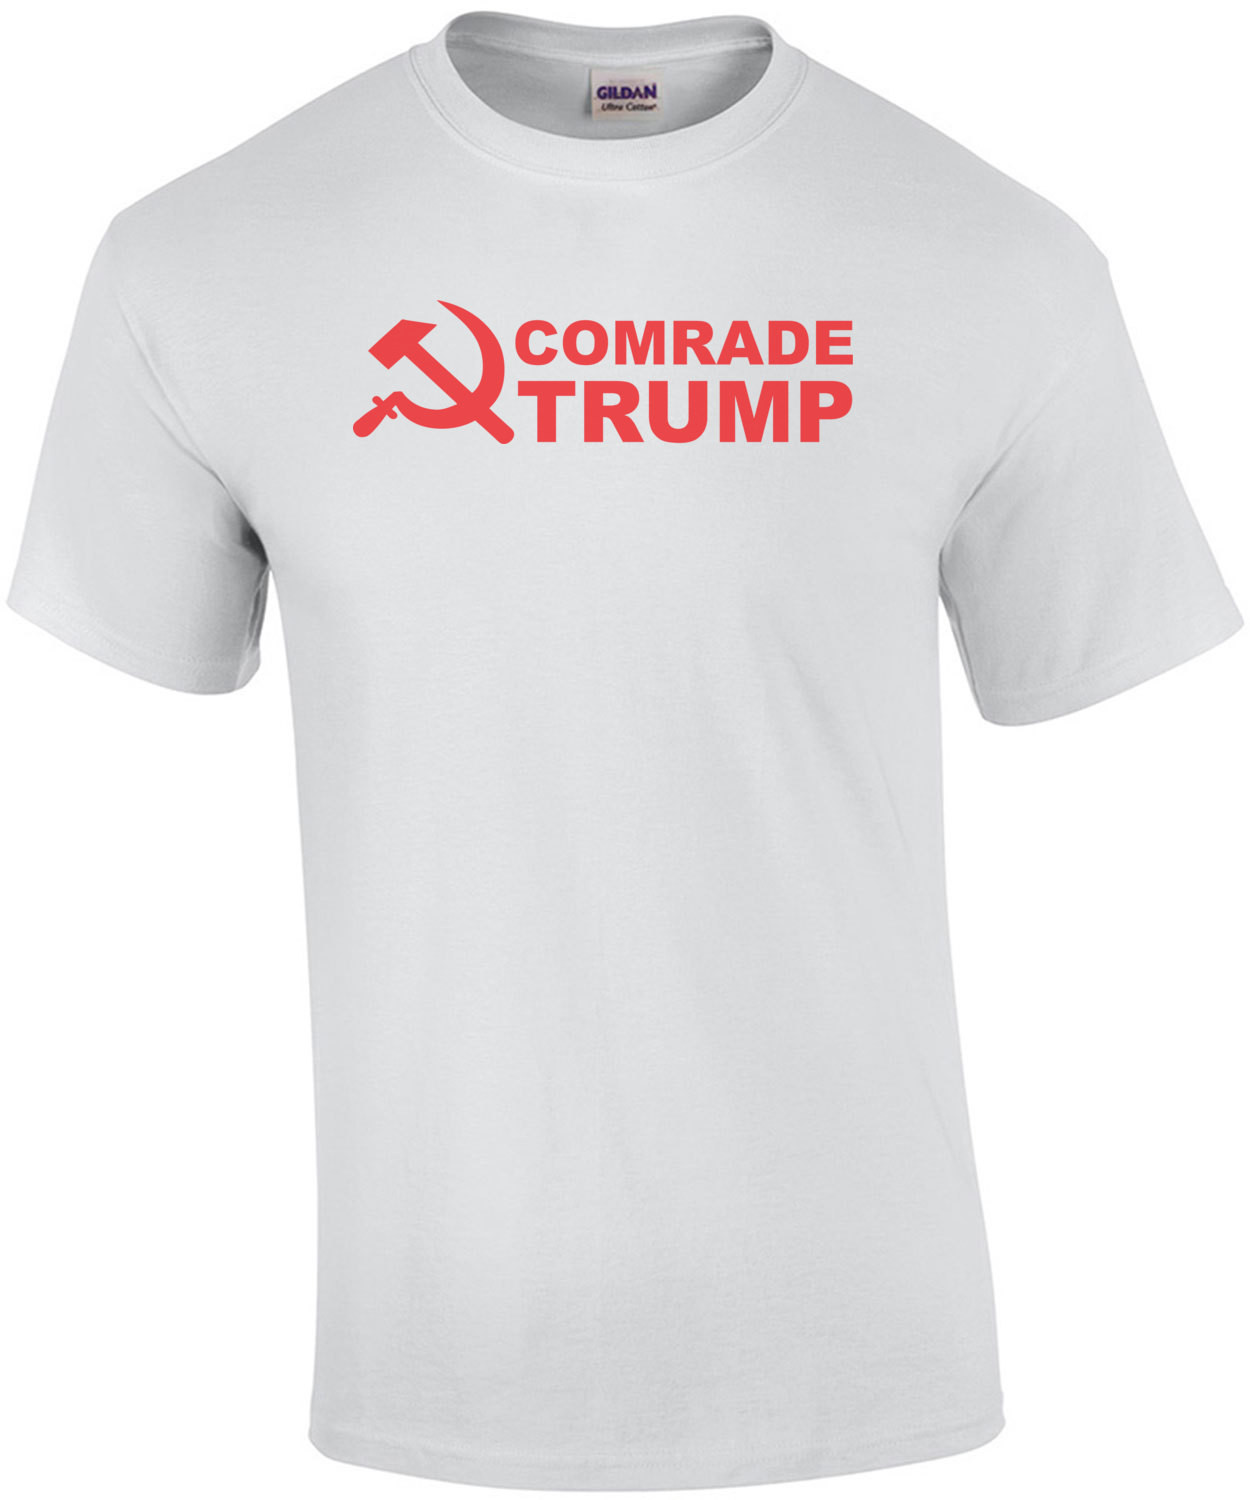 Comrade Trump - Donald Trump T-Shirt